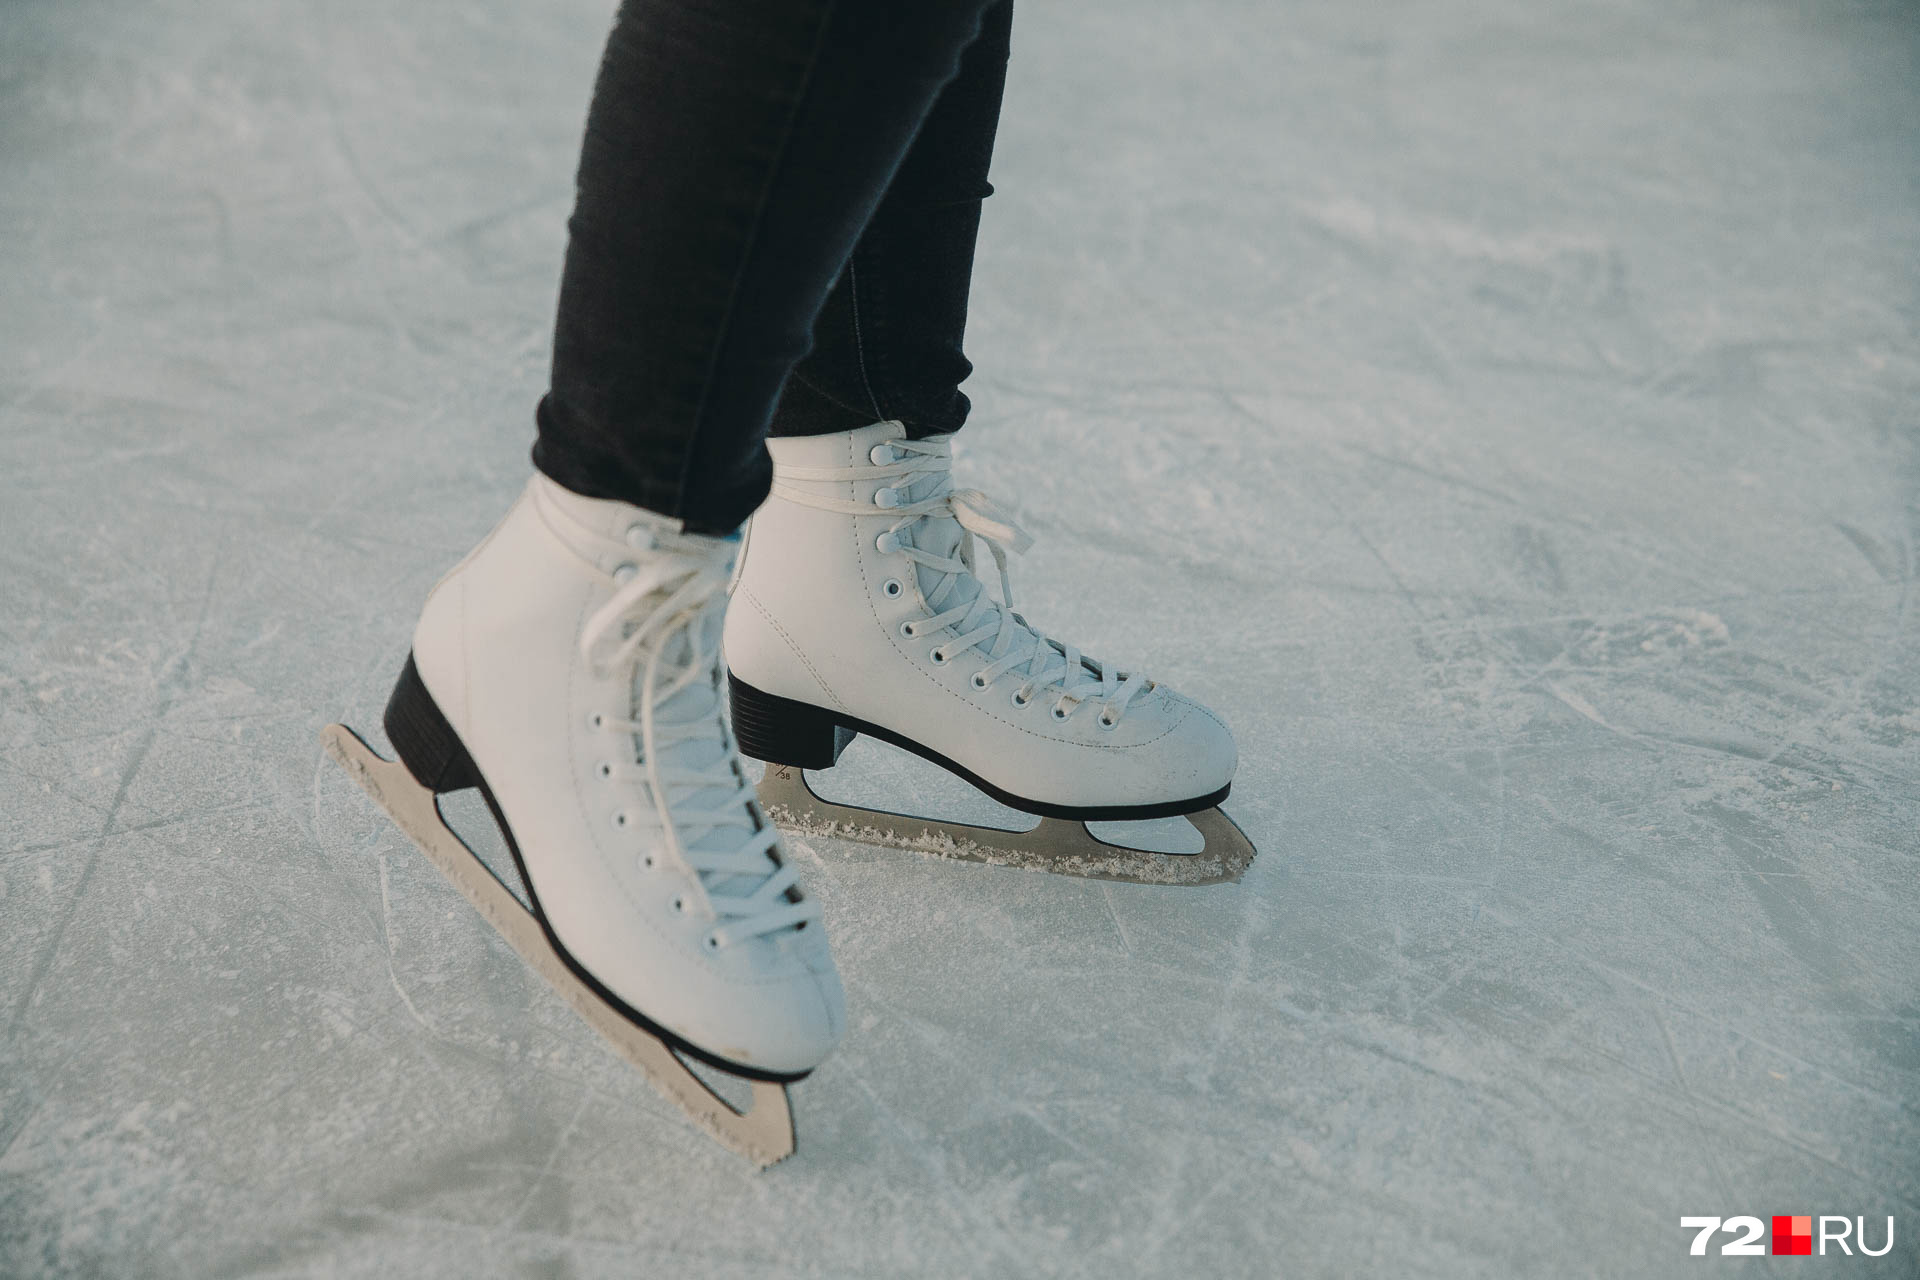 Лед, по мнению Маши Токмаковой, гладкий и пригоден для быстрой езды на коньках